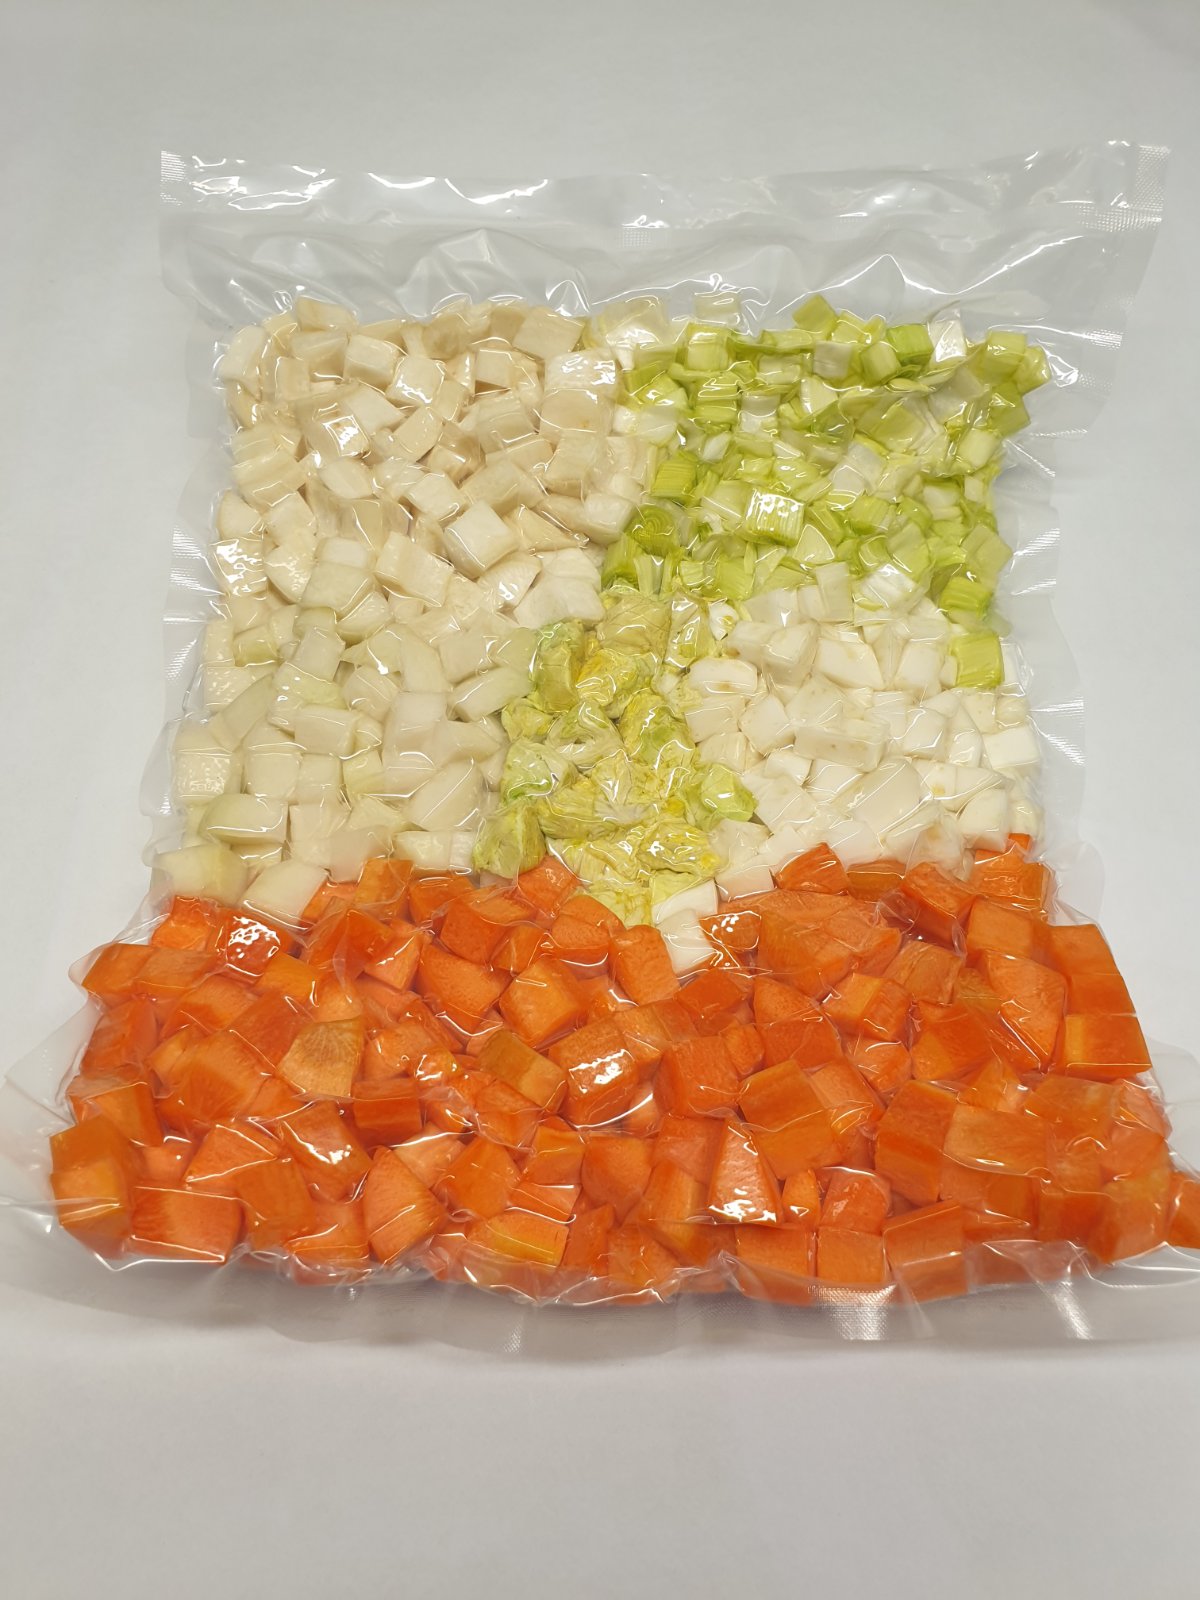 Gemischte Verpackung. Blumenkohl, Brokkoli, Kohlrabi, Karotten, Knollensellerie, Küchenzwiebeln, Zucchini